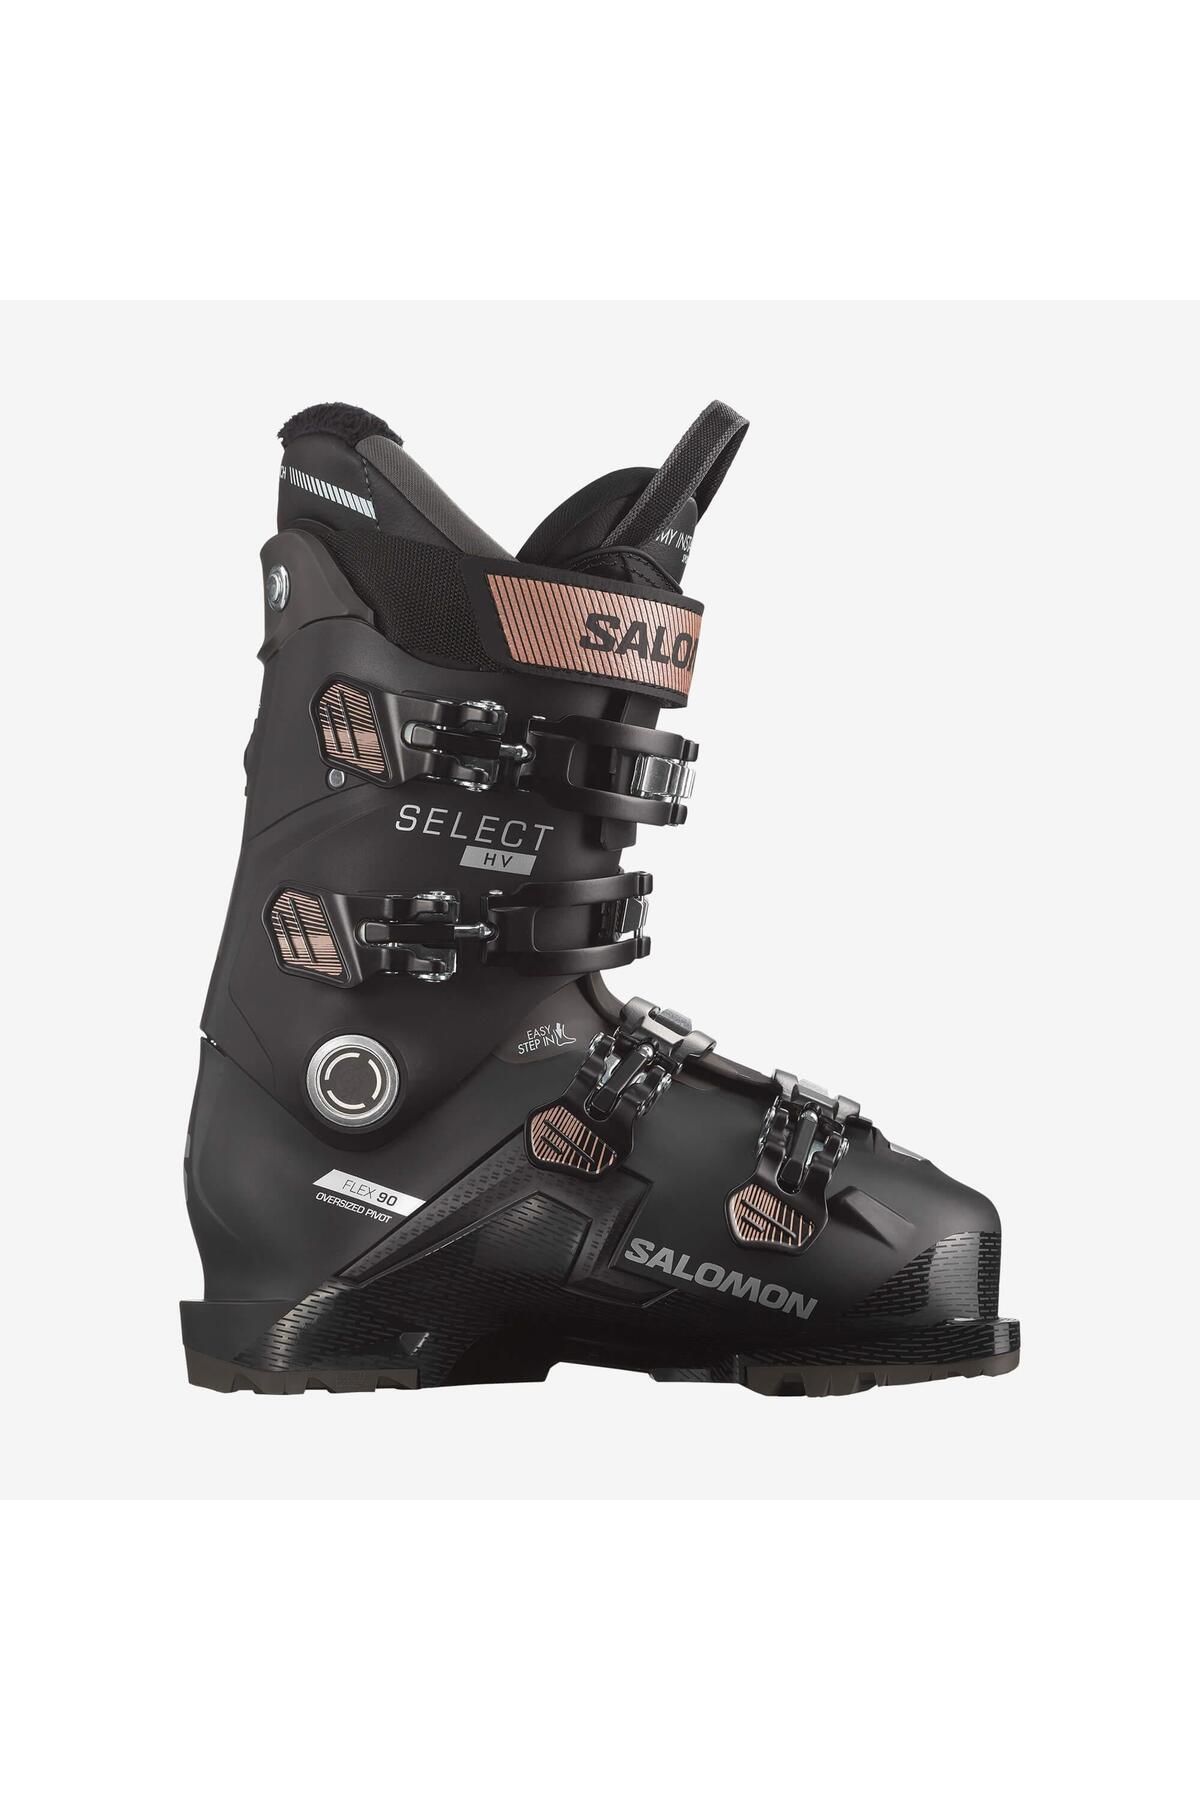 Salomon Select Hv 90 Kadın Kayak Ayakkabısı-l47343000bkp